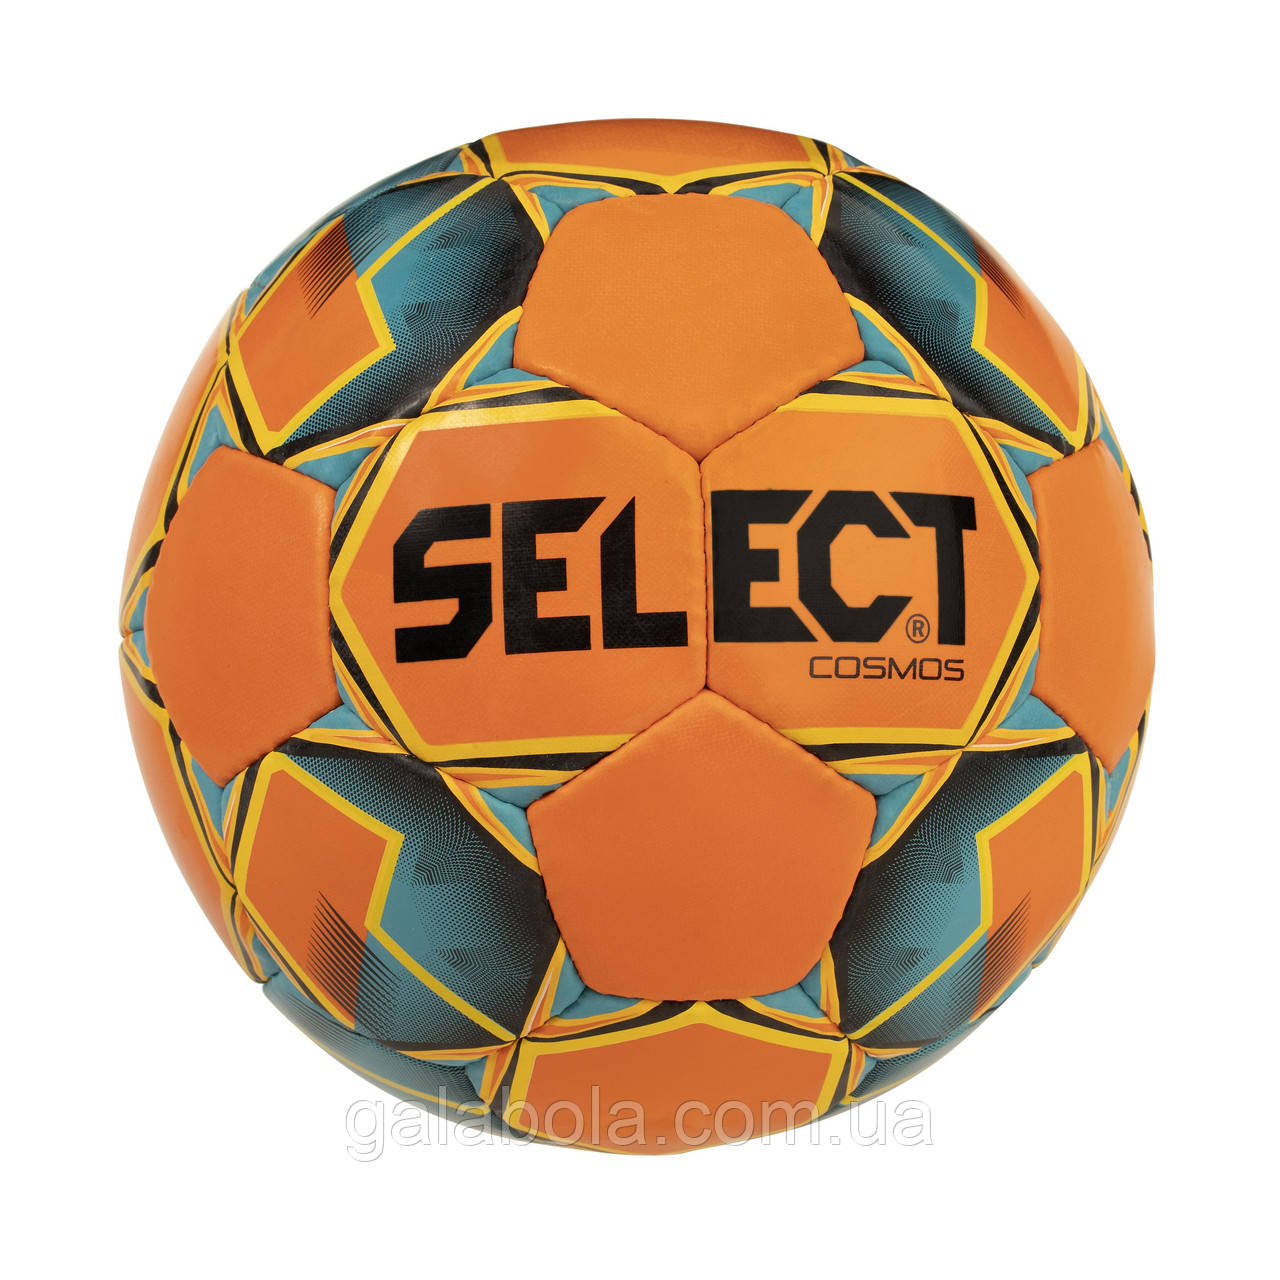 М'яч футбольний Select Cosmos (розмір 5)